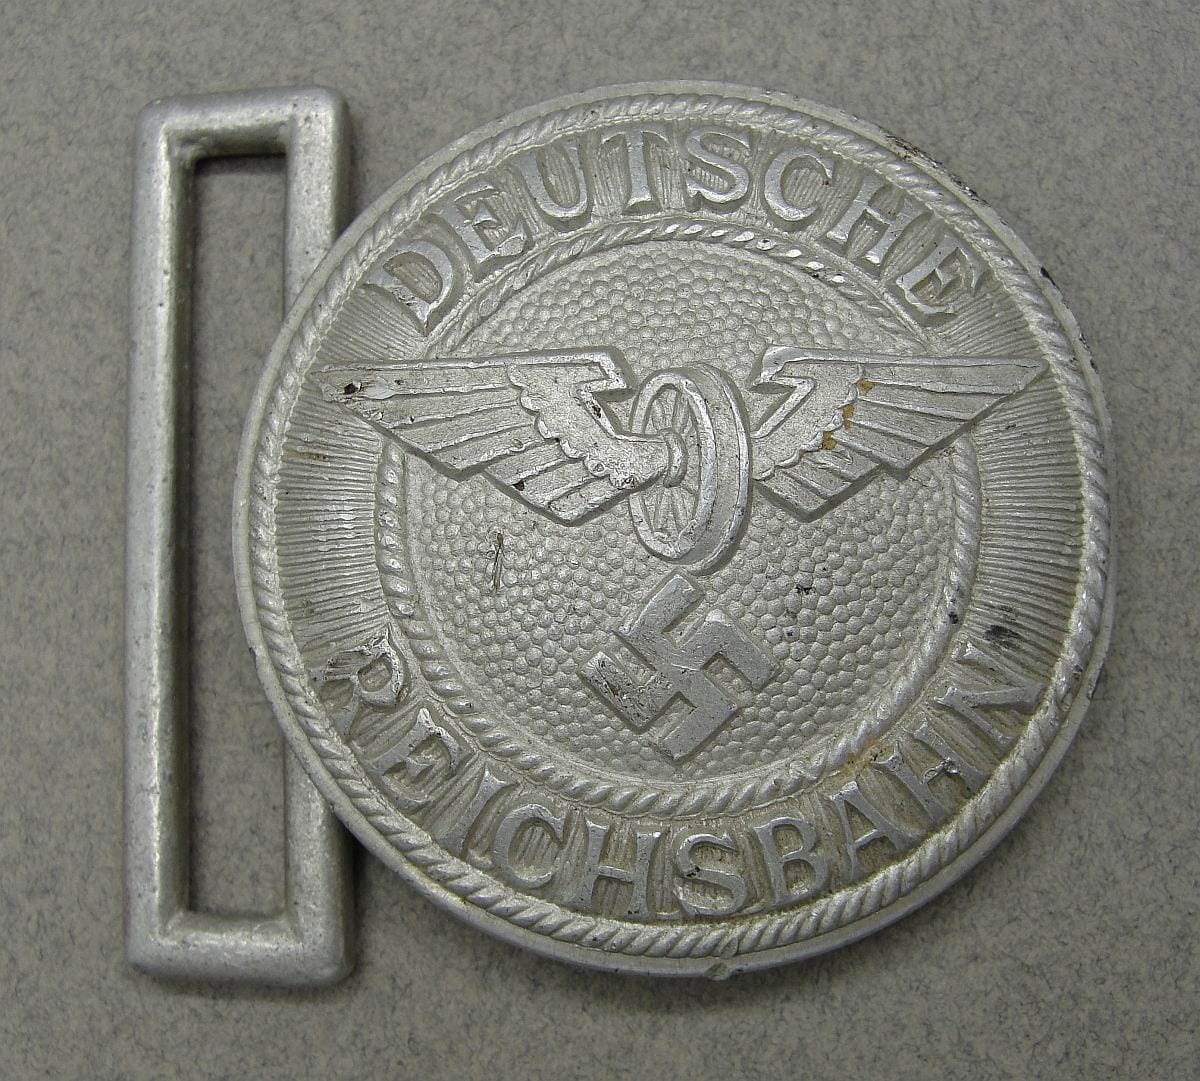 "DEUTSCHE REICHSBAHN" REICHSBAHNSCHUTZ Railway Police Officer's Buckle -Assmann